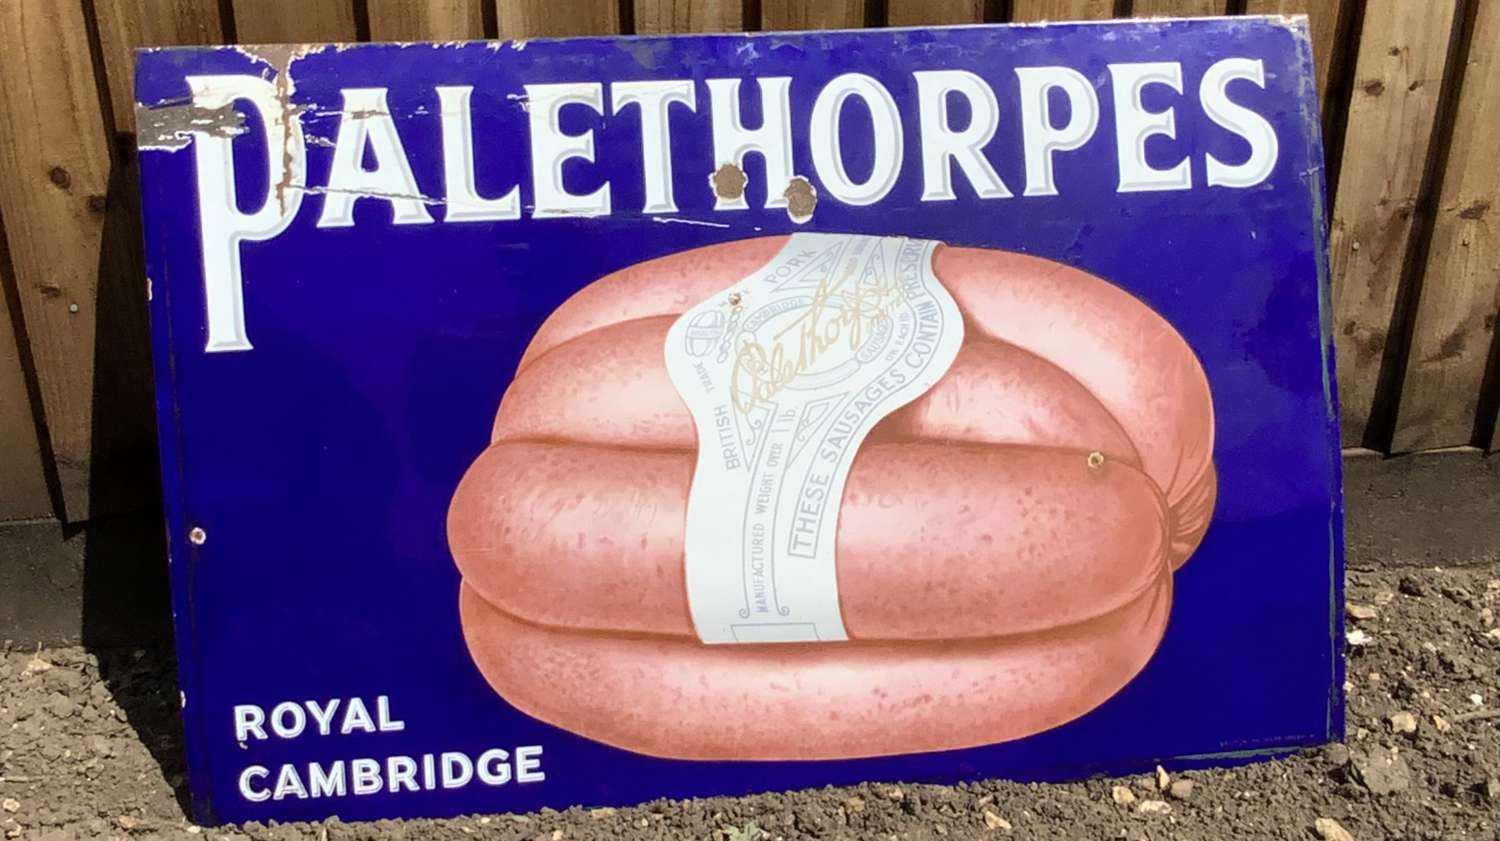 Palethorpes sausages enamel advertising sign